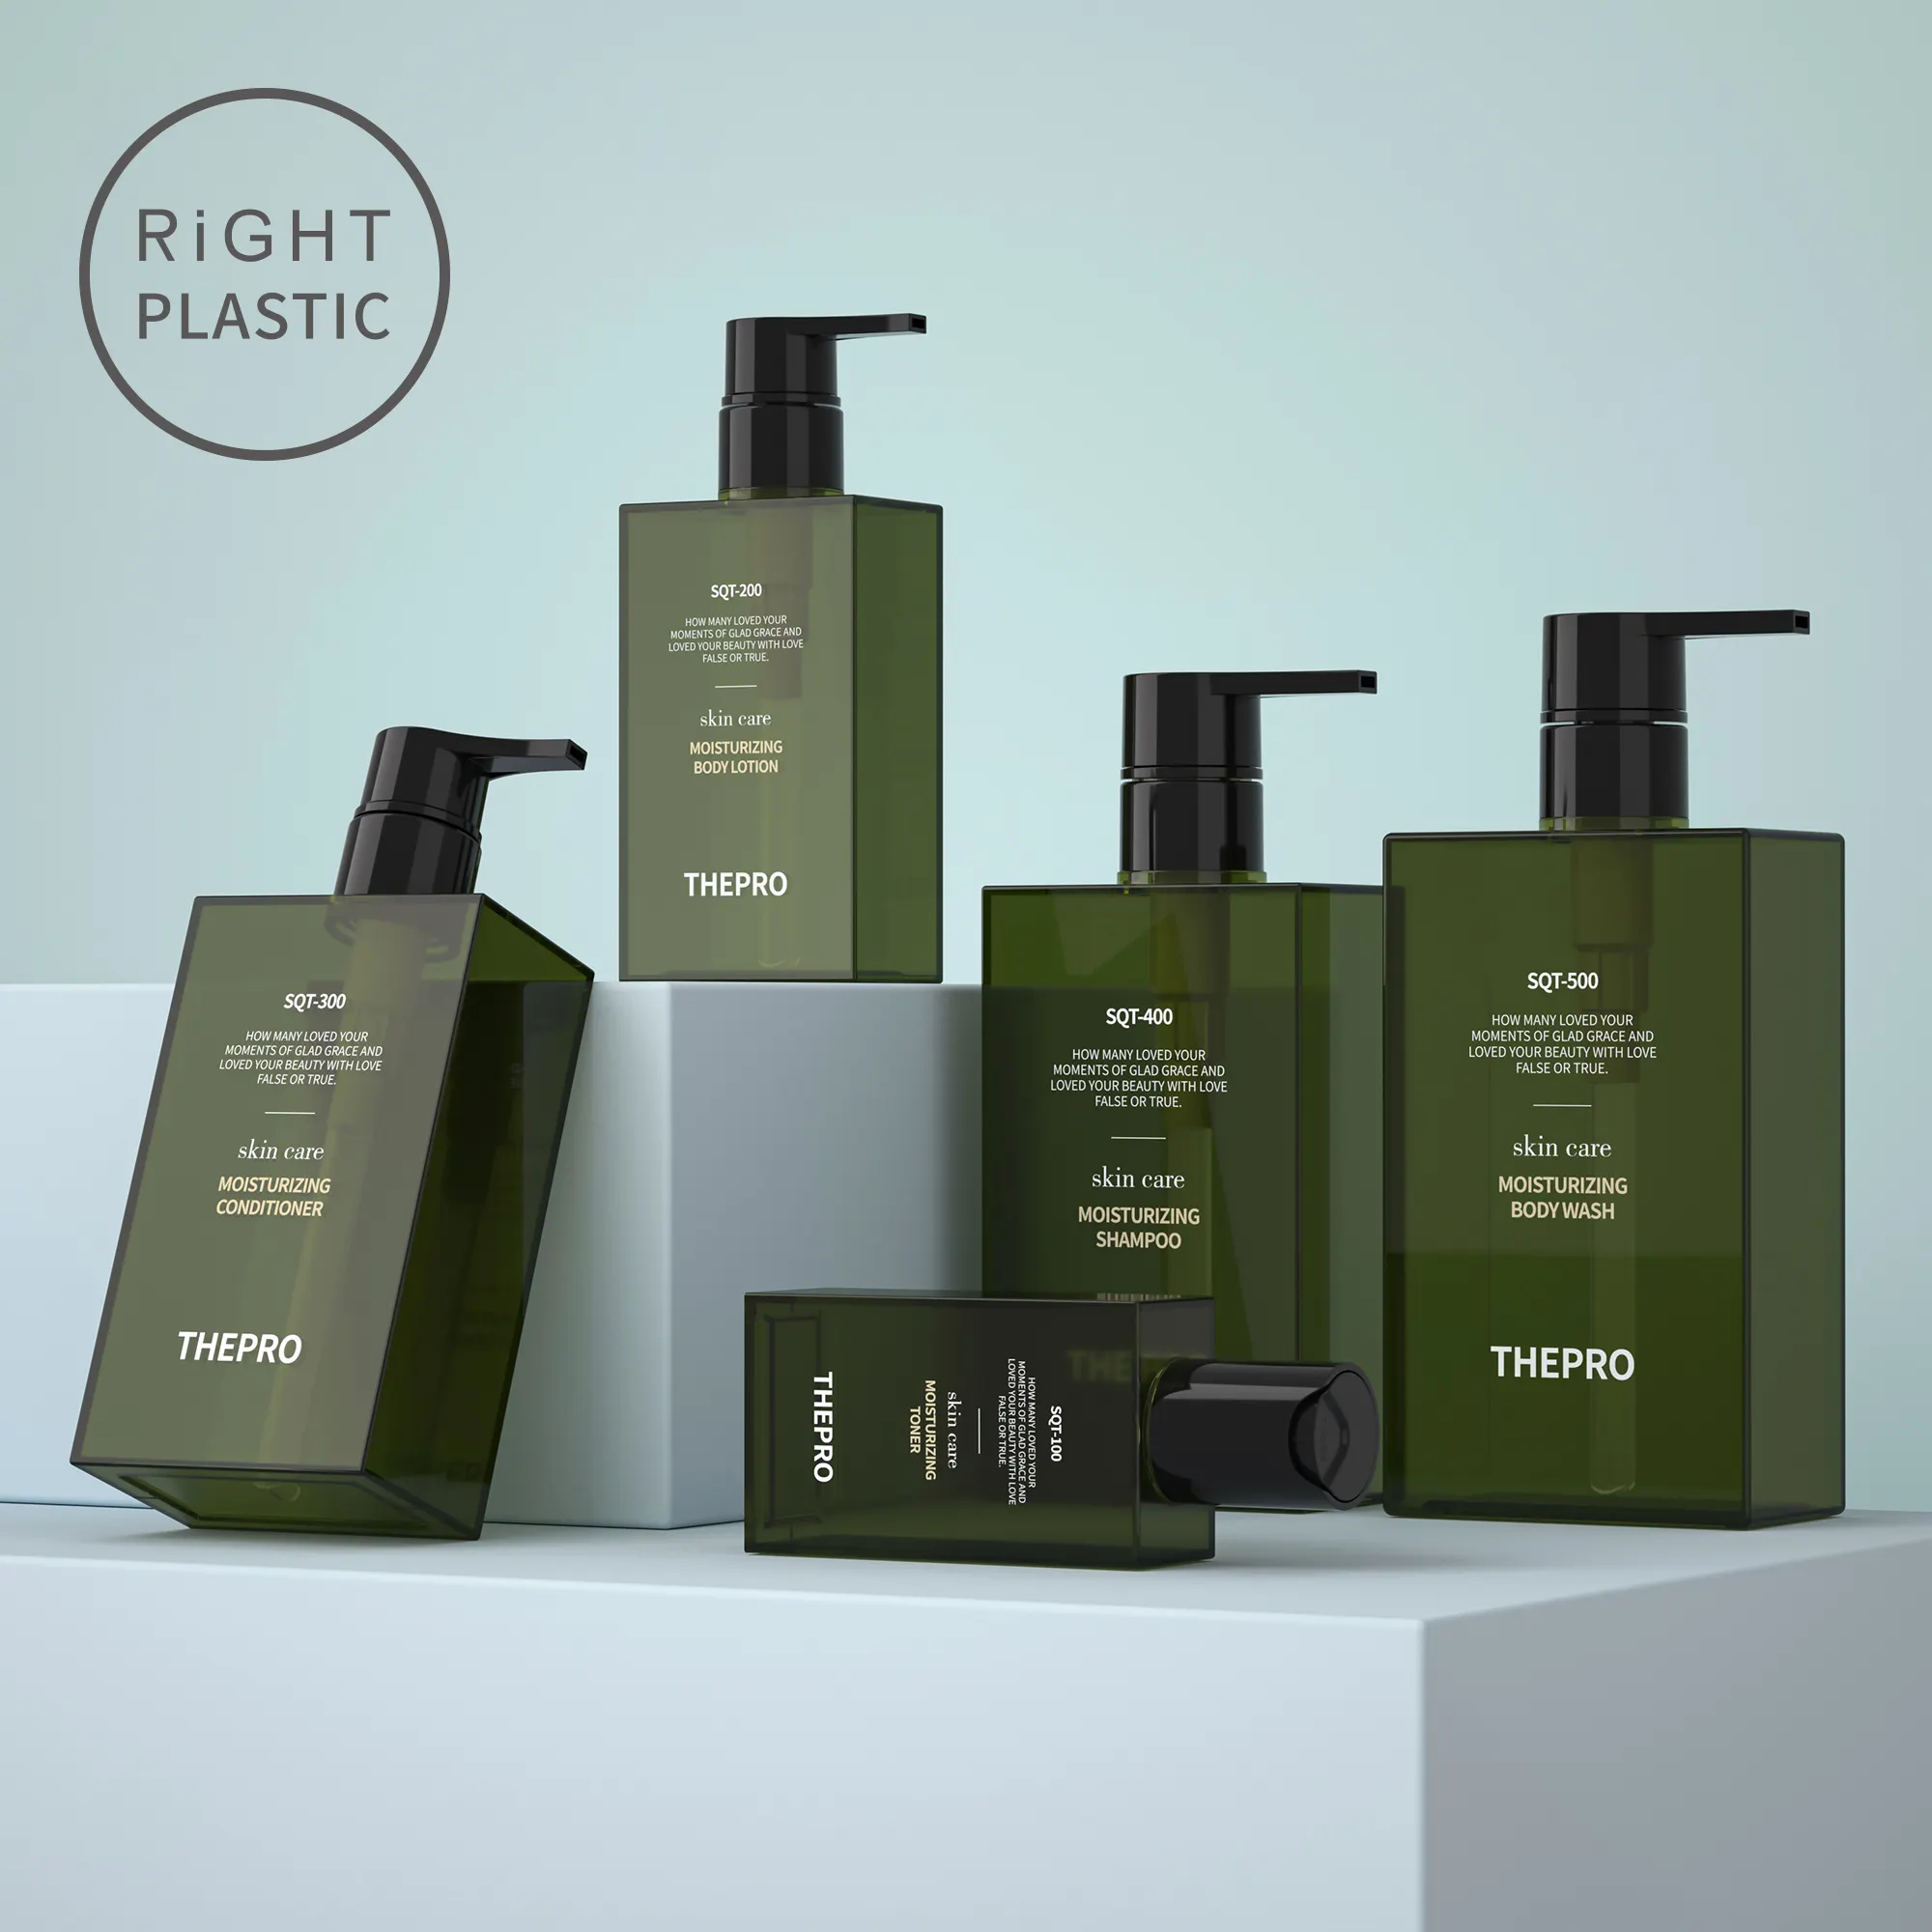 PETG quadrado plástico cosméticos embalagens 100ml 300ml 500ml lavagem do corpo shampoo loção óleo essencial verde preto garrafas recipiente